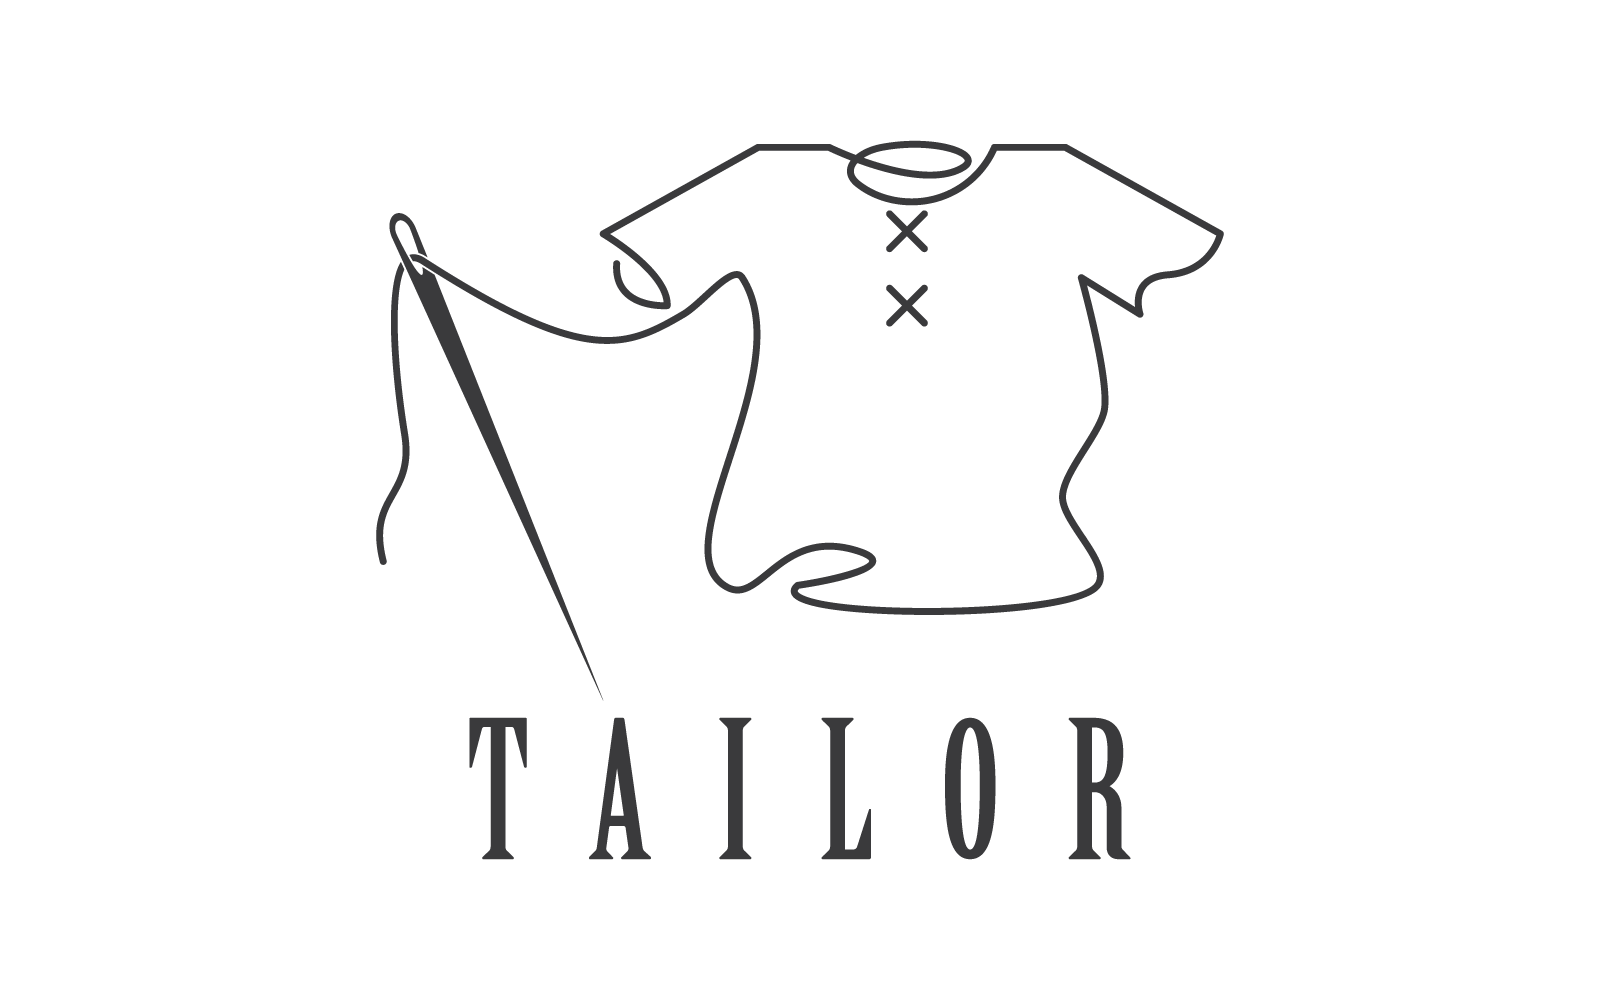 Tailor or textile logo vector template design